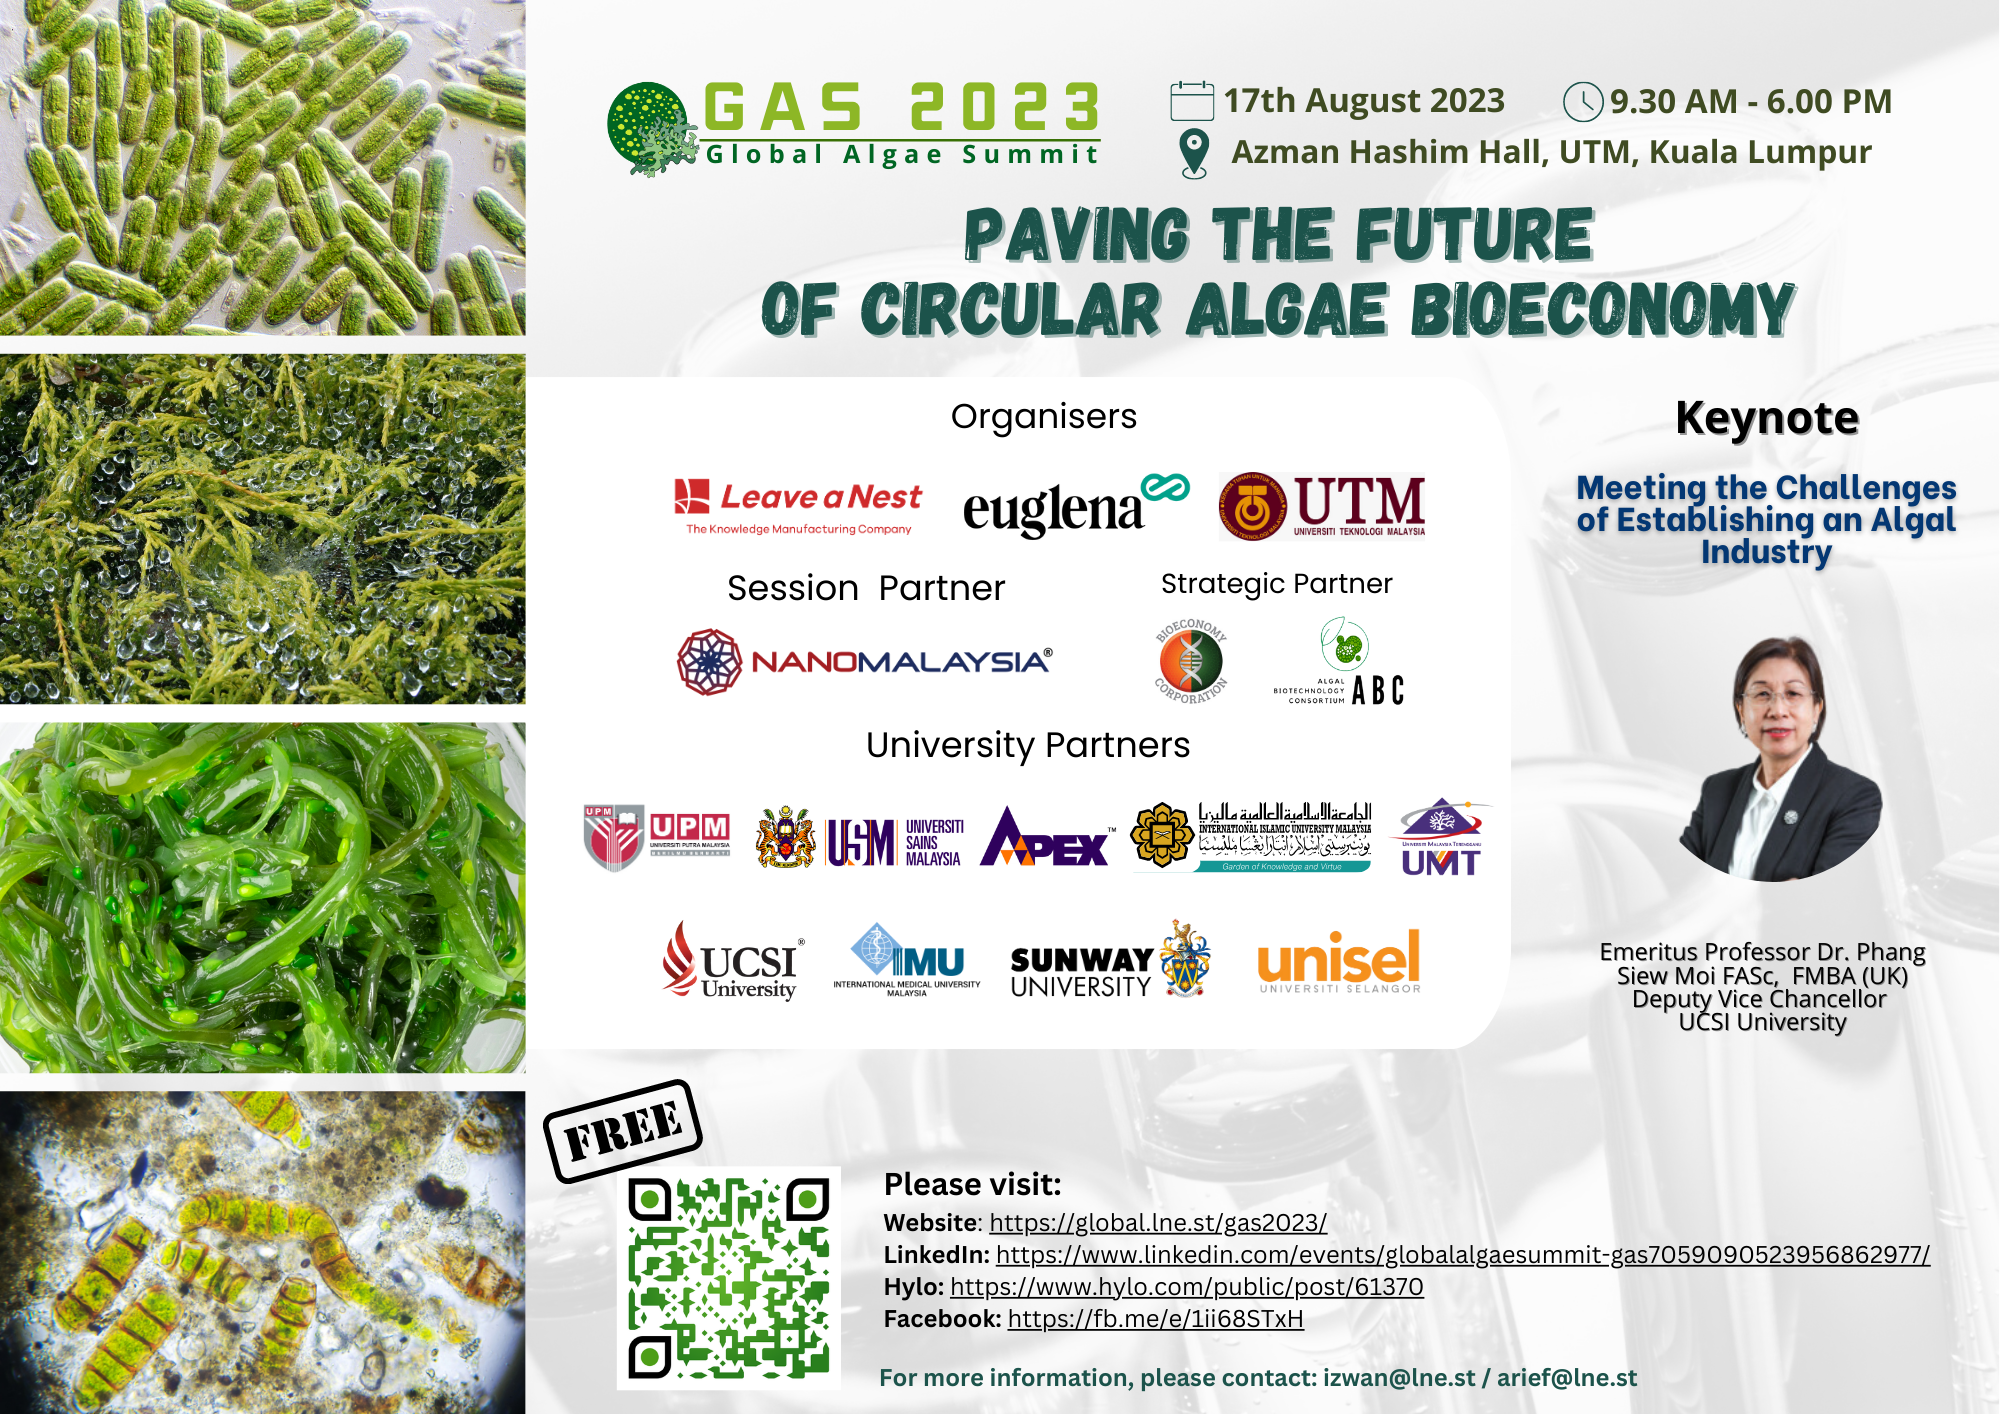 Global Algae Summit 2023 (GAS 2023)